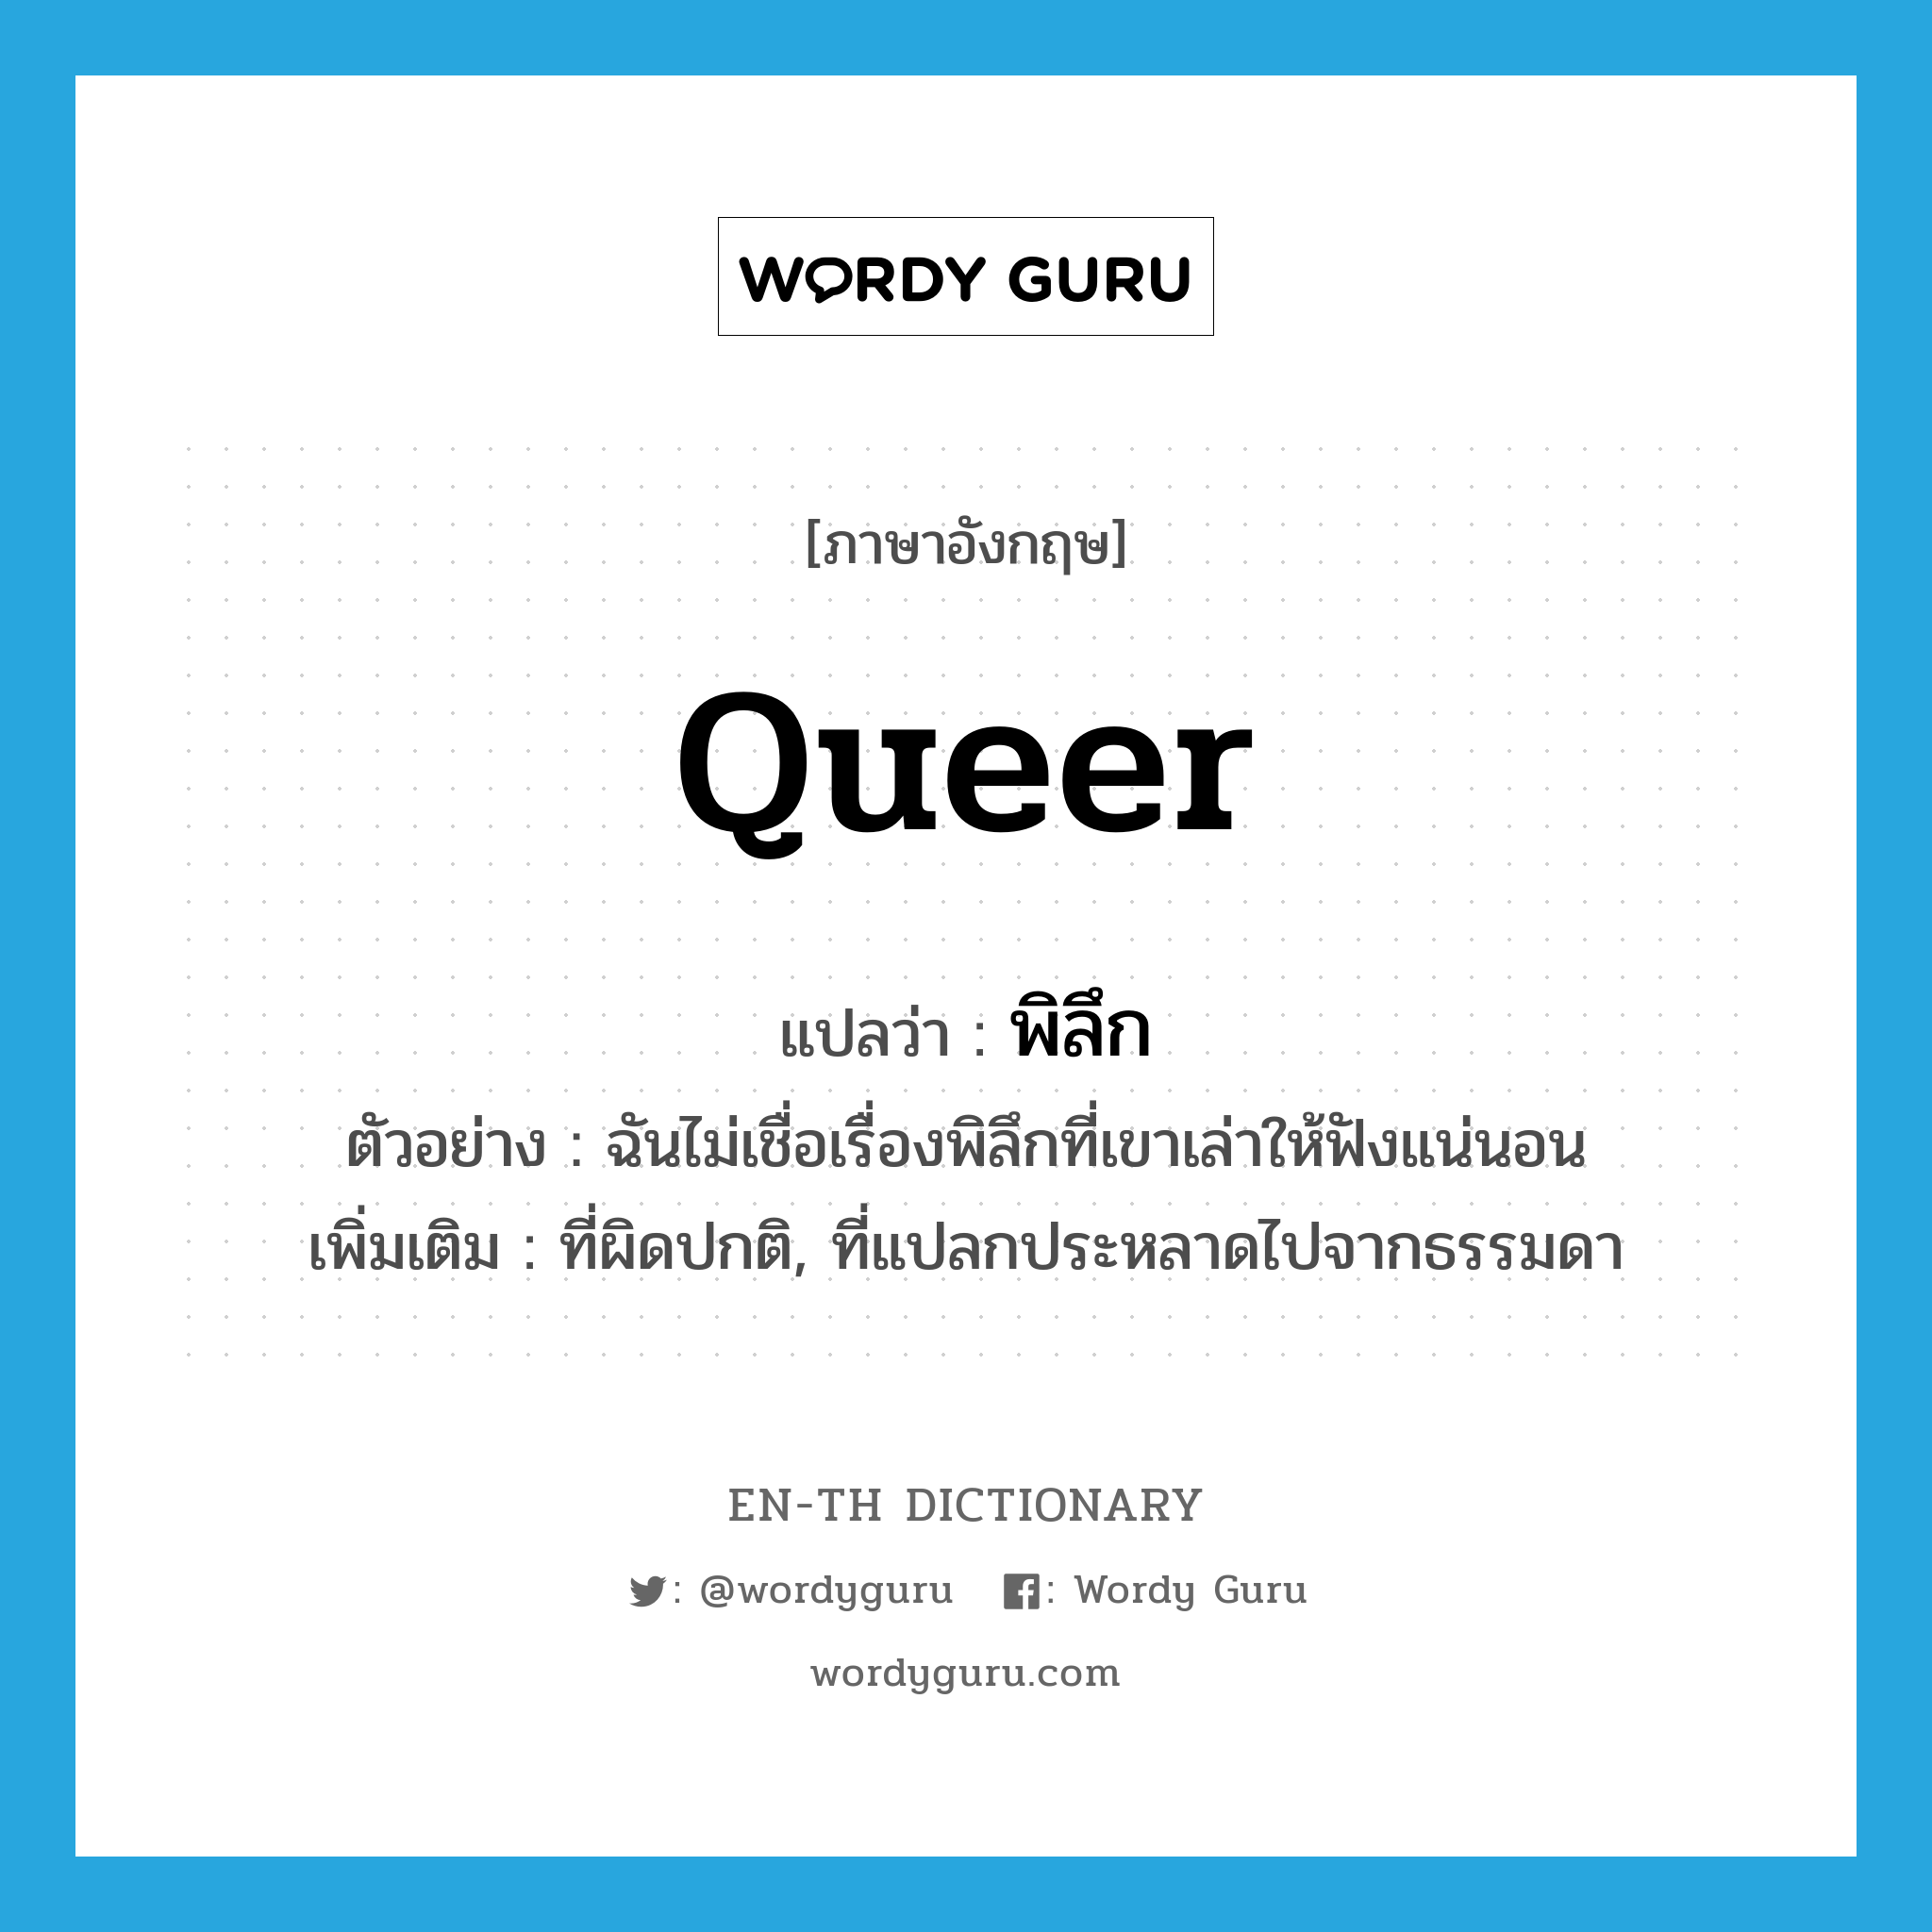 queer แปลว่า?, คำศัพท์ภาษาอังกฤษ queer แปลว่า พิลึก ประเภท ADJ ตัวอย่าง ฉันไม่เชื่อเรื่องพิลึกที่เขาเล่าให้ฟังแน่นอน เพิ่มเติม ที่ผิดปกติ, ที่แปลกประหลาดไปจากธรรมดา หมวด ADJ